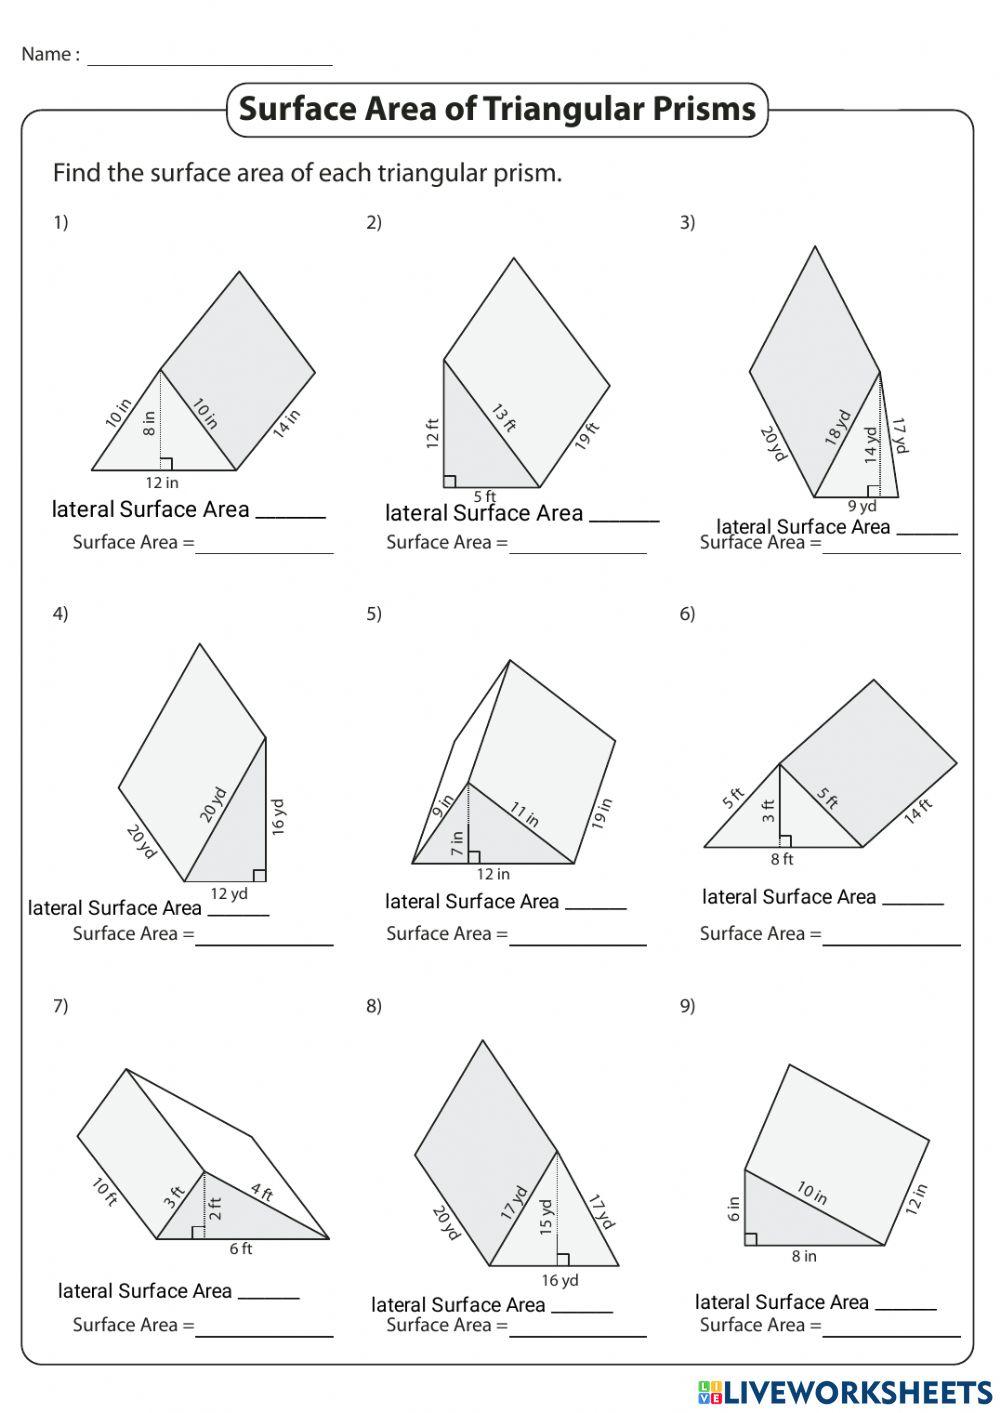 SA of triangular prisms